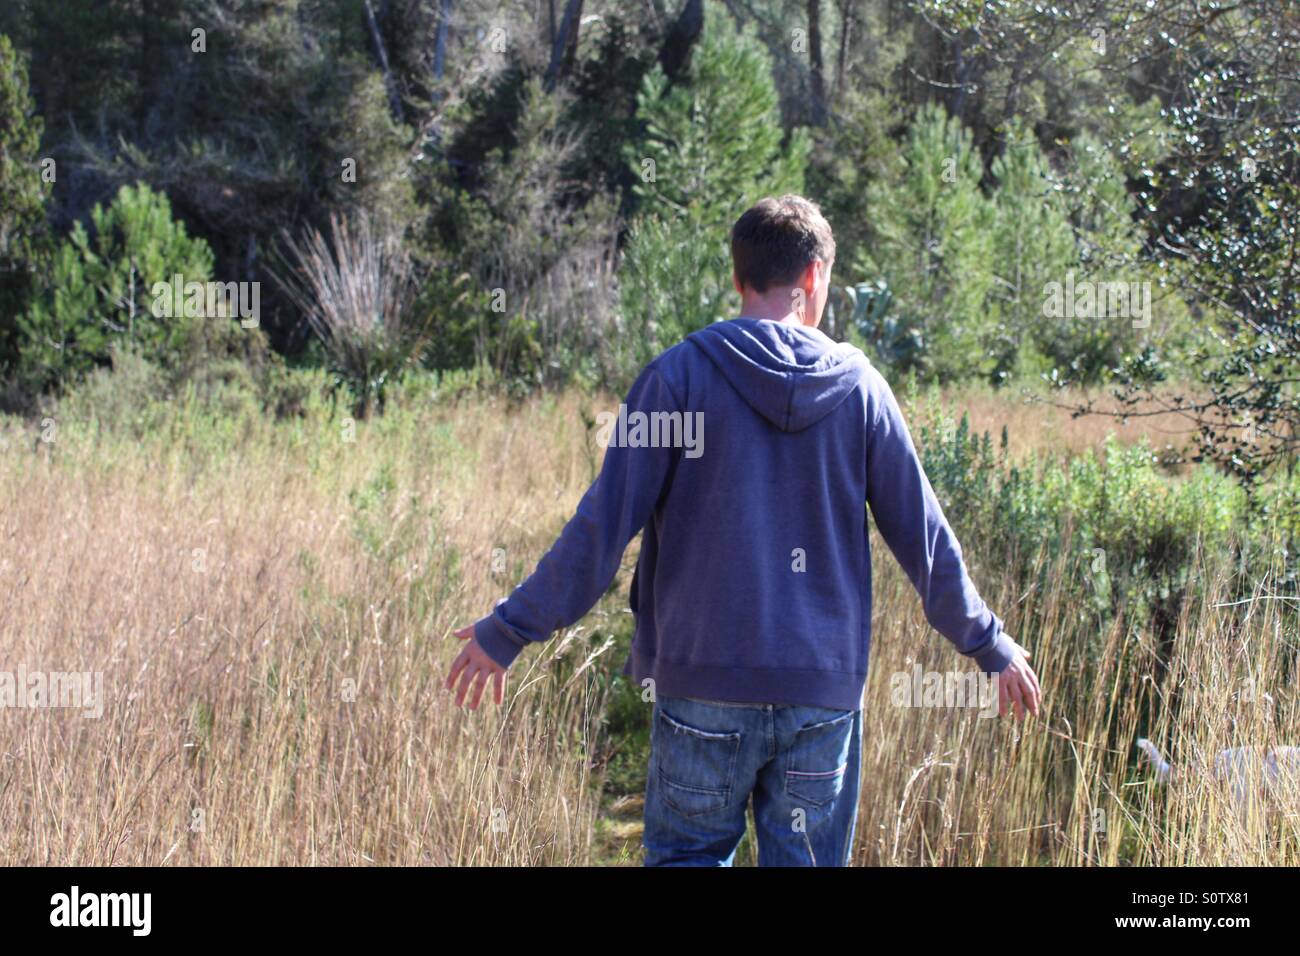 Man walking in a field Stock Photo